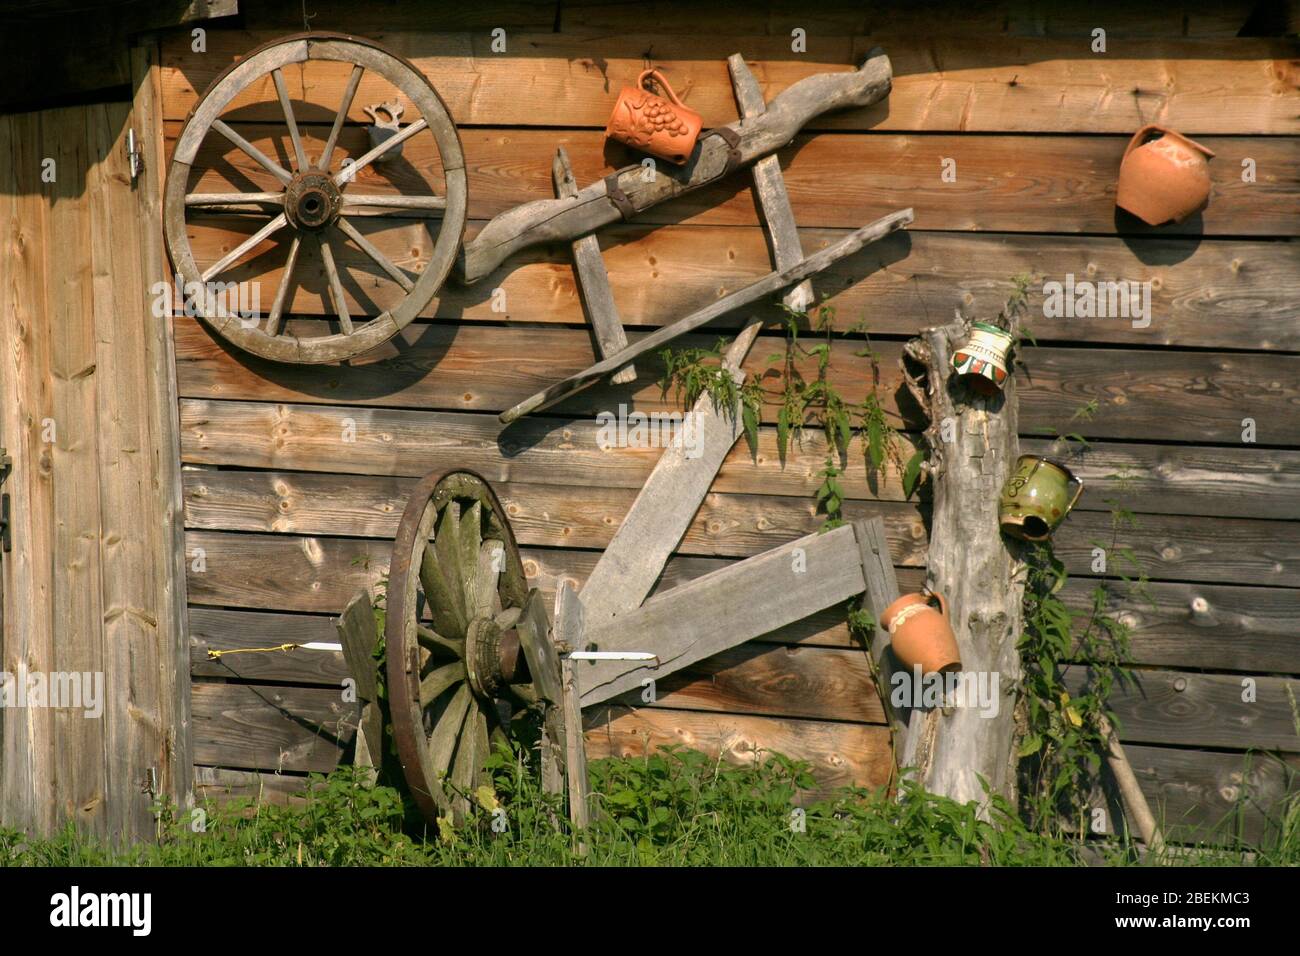 Vari vecchi manufatti di vita contadina rumena esposti nel cortile di una residenza privata in Romania Foto Stock